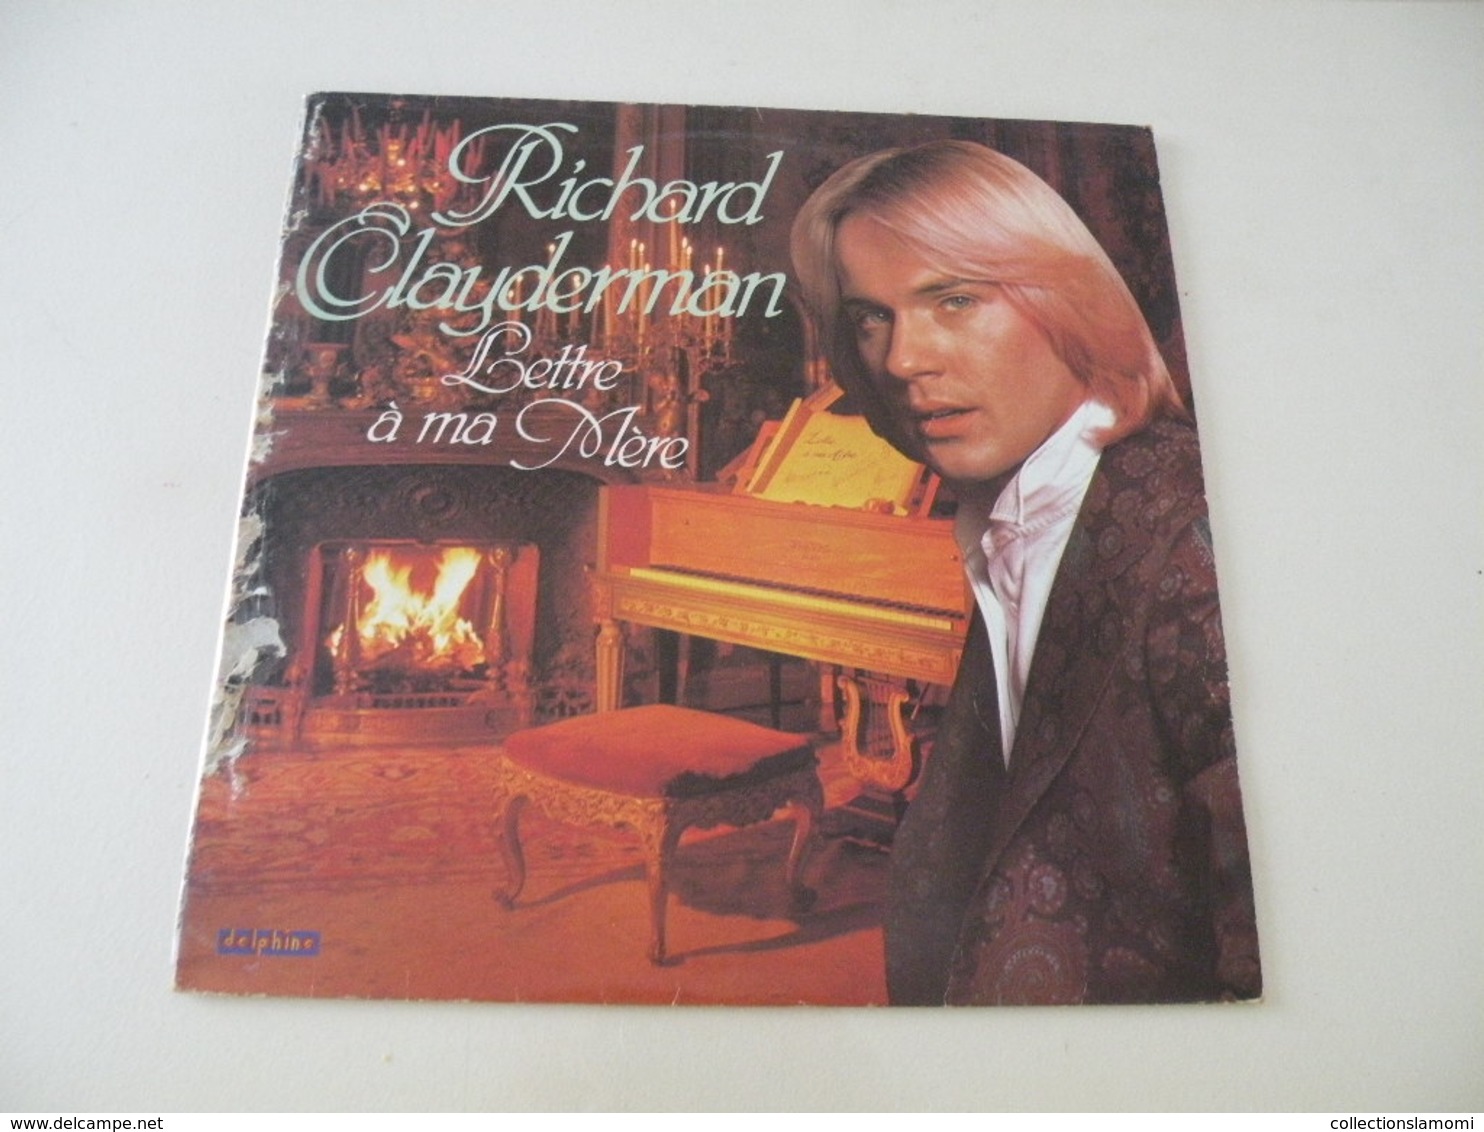 Richard Clayderman 1979 - (Titres Sur Photos) - Vinyle 33 T LP - Musicales